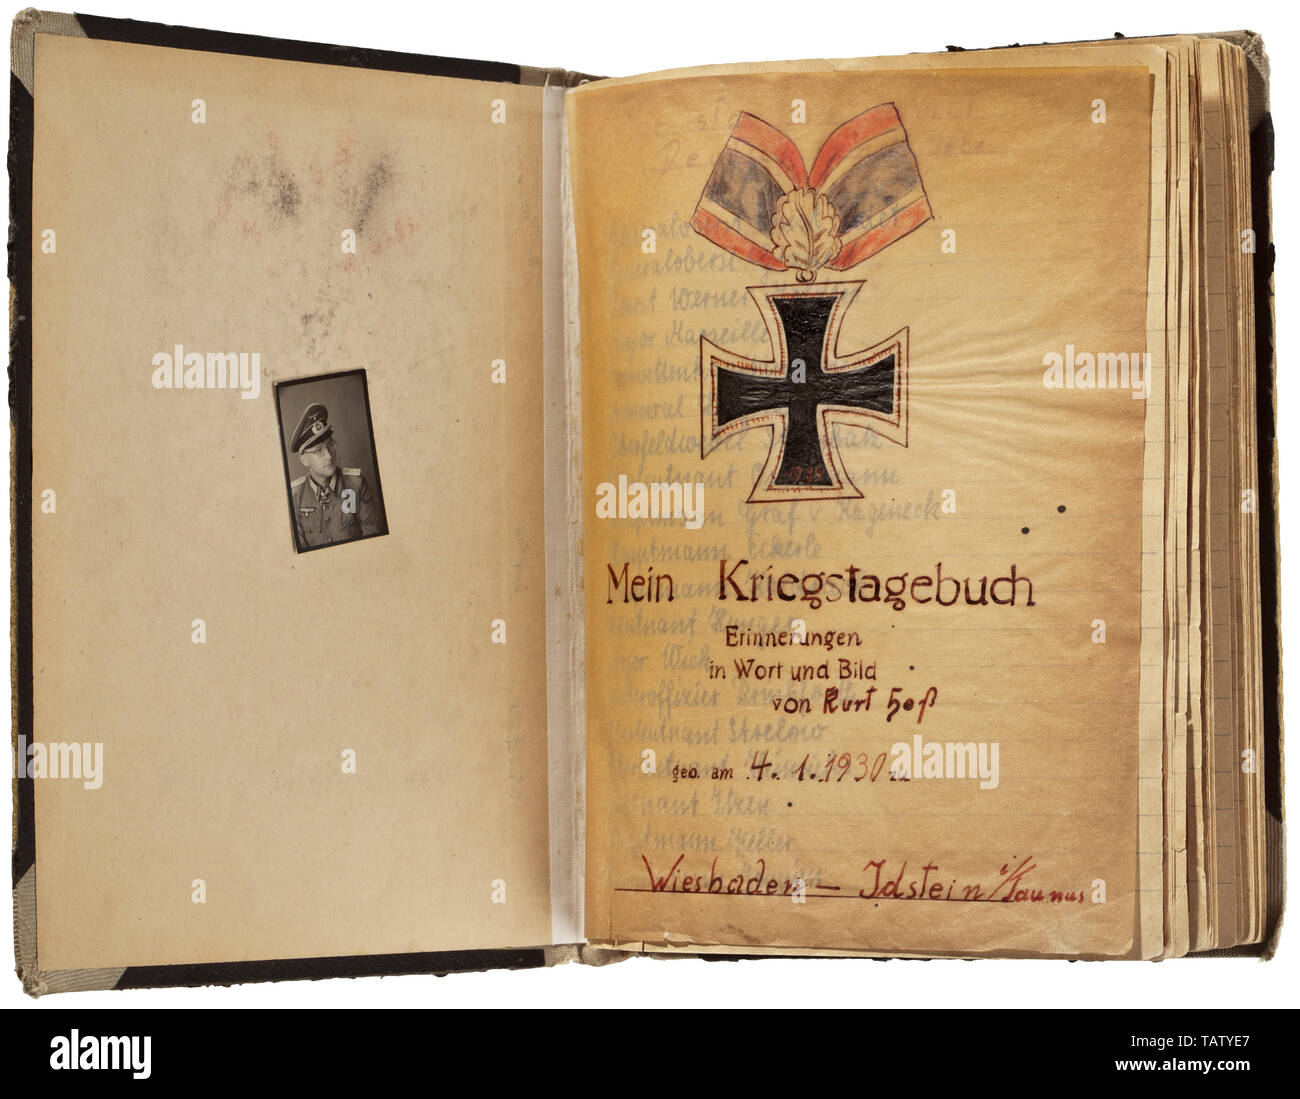 Ein Album mit Fotos/Porträts von Knight's Cross Gewinner, meist mit Widmung oder original Unterschriften, teilweise mit Untertiteln, mit ca. 70 gesteckt oder geklebt - in Fotografien und Postkarten von vielen hoch dekoriert der Wehrmacht aus allen Branchen Service. Meist von der Größe 9 x 13 cm, mit Autogramm oder Original Signatur in Tinte, einige mit gestempelten Signatur. Teilweise eingezäunt ist der ursprüngliche Korrespondenz, in der Hitler Jugend Kurt Heß Zugriffe ein signiertes Foto gesendet werden. Die hochwertige Portrait Fotos zeigen berühmten siegern wie Mölders, v., Editorial-Use - Nur Stockfoto